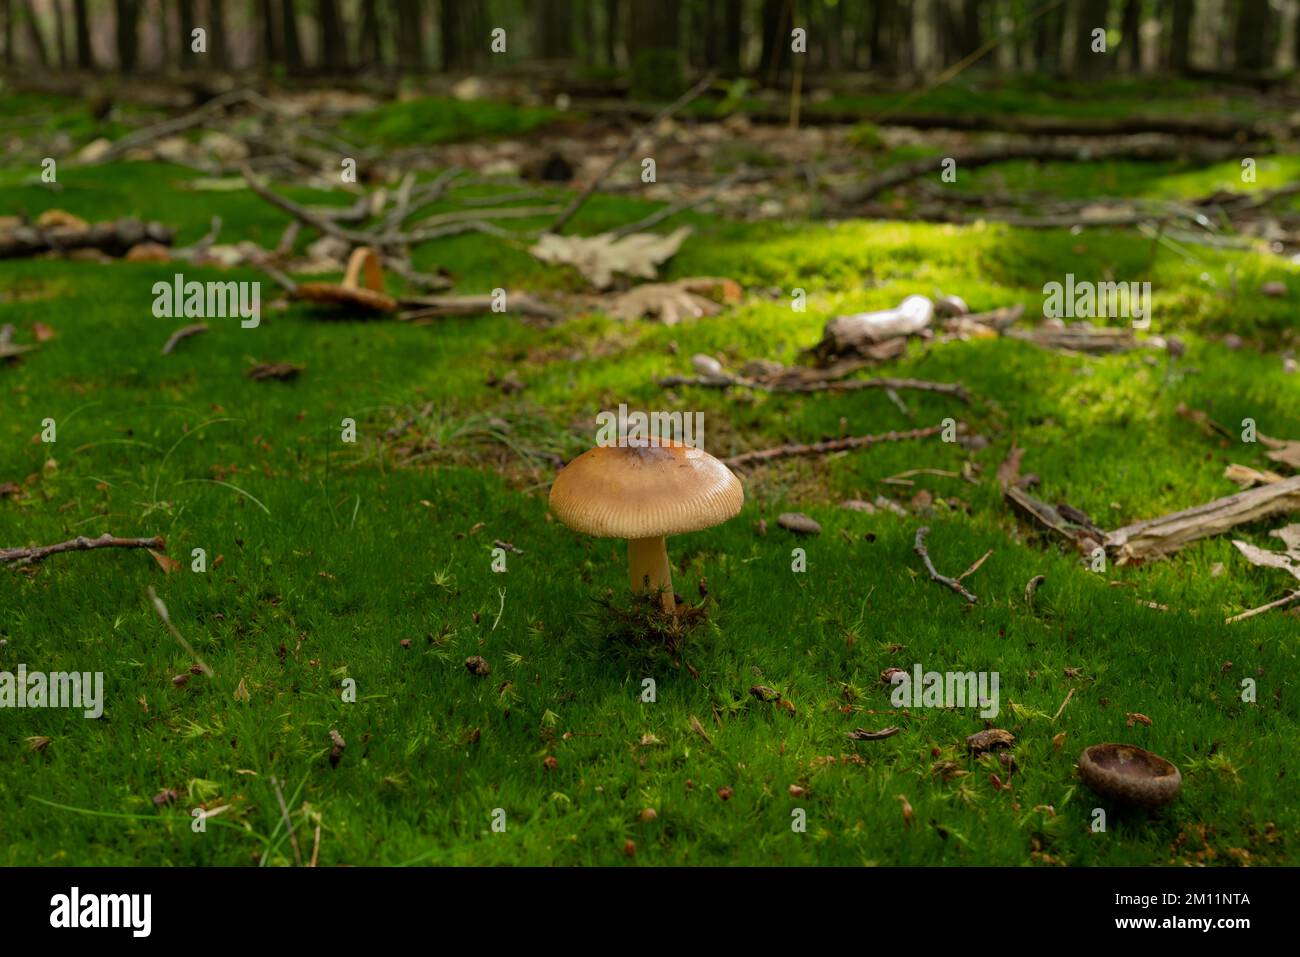 Giftiger Pilz, kleiner brauner giftiger Pilz im Wald, auf Moos gewachsen Stockfoto